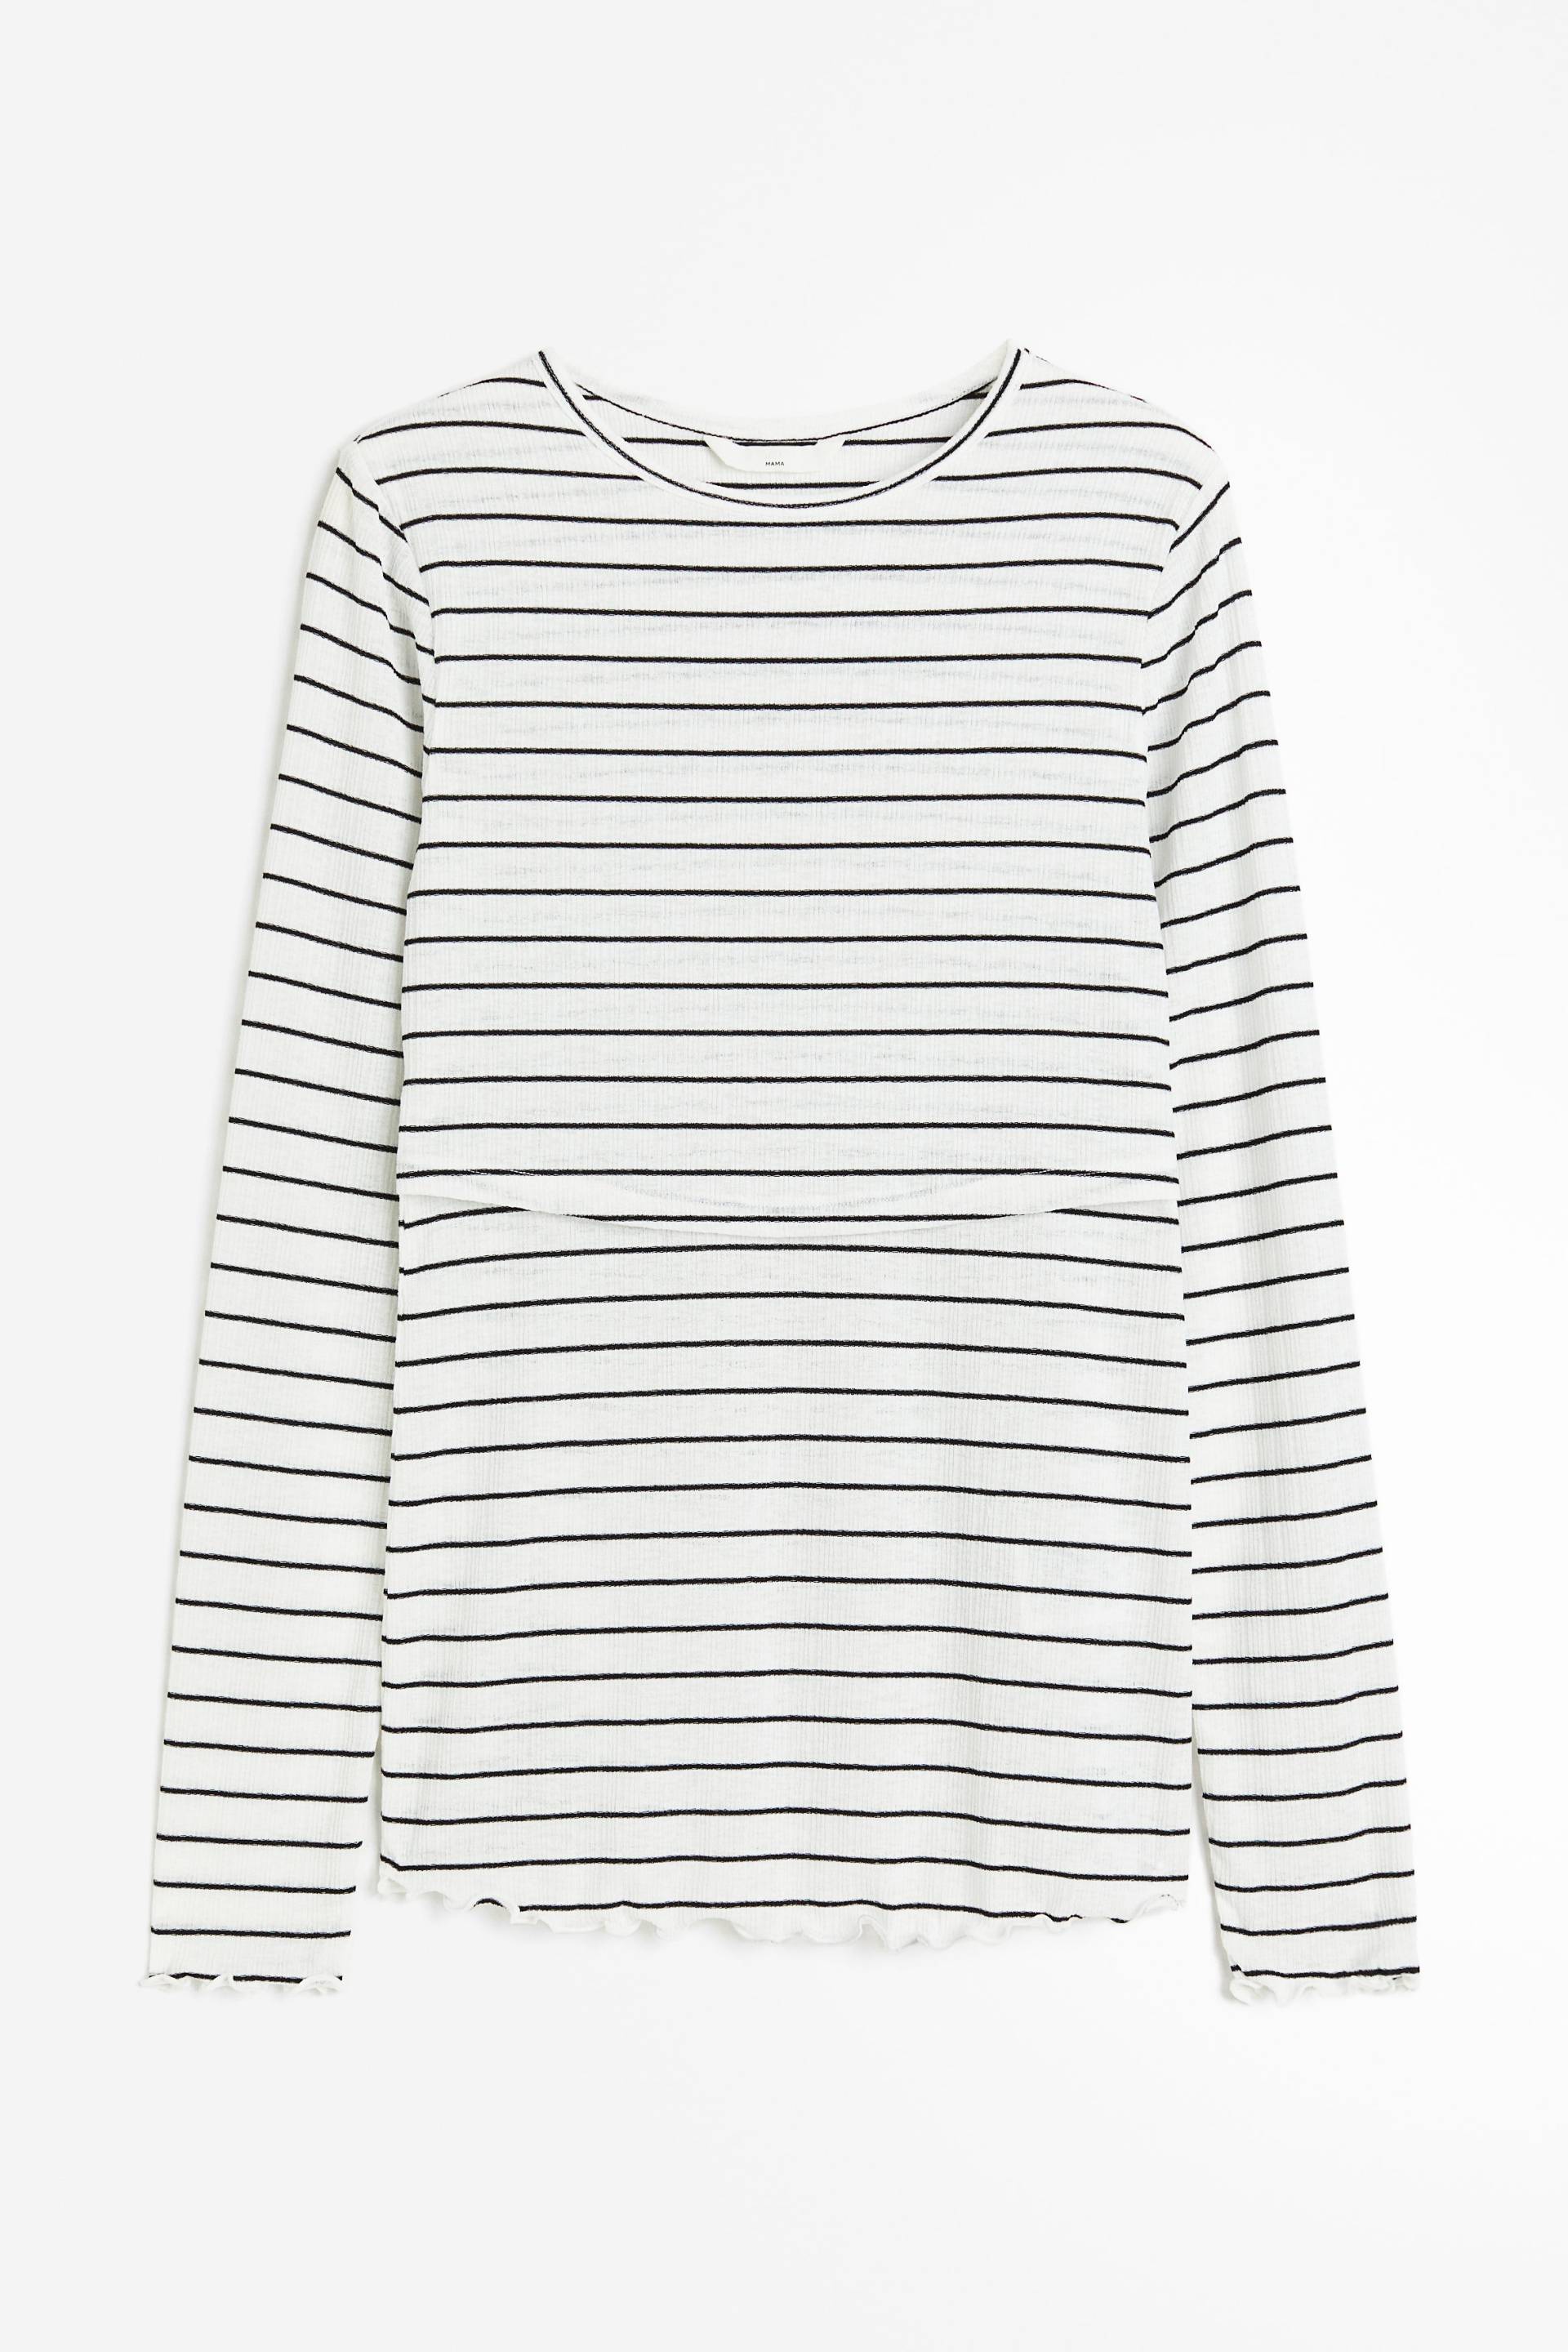 H&M MAMA Before & After Stillshirt Weiß/Schwarz gestreift, Tops in Größe XL. Farbe: White/black striped von H&M